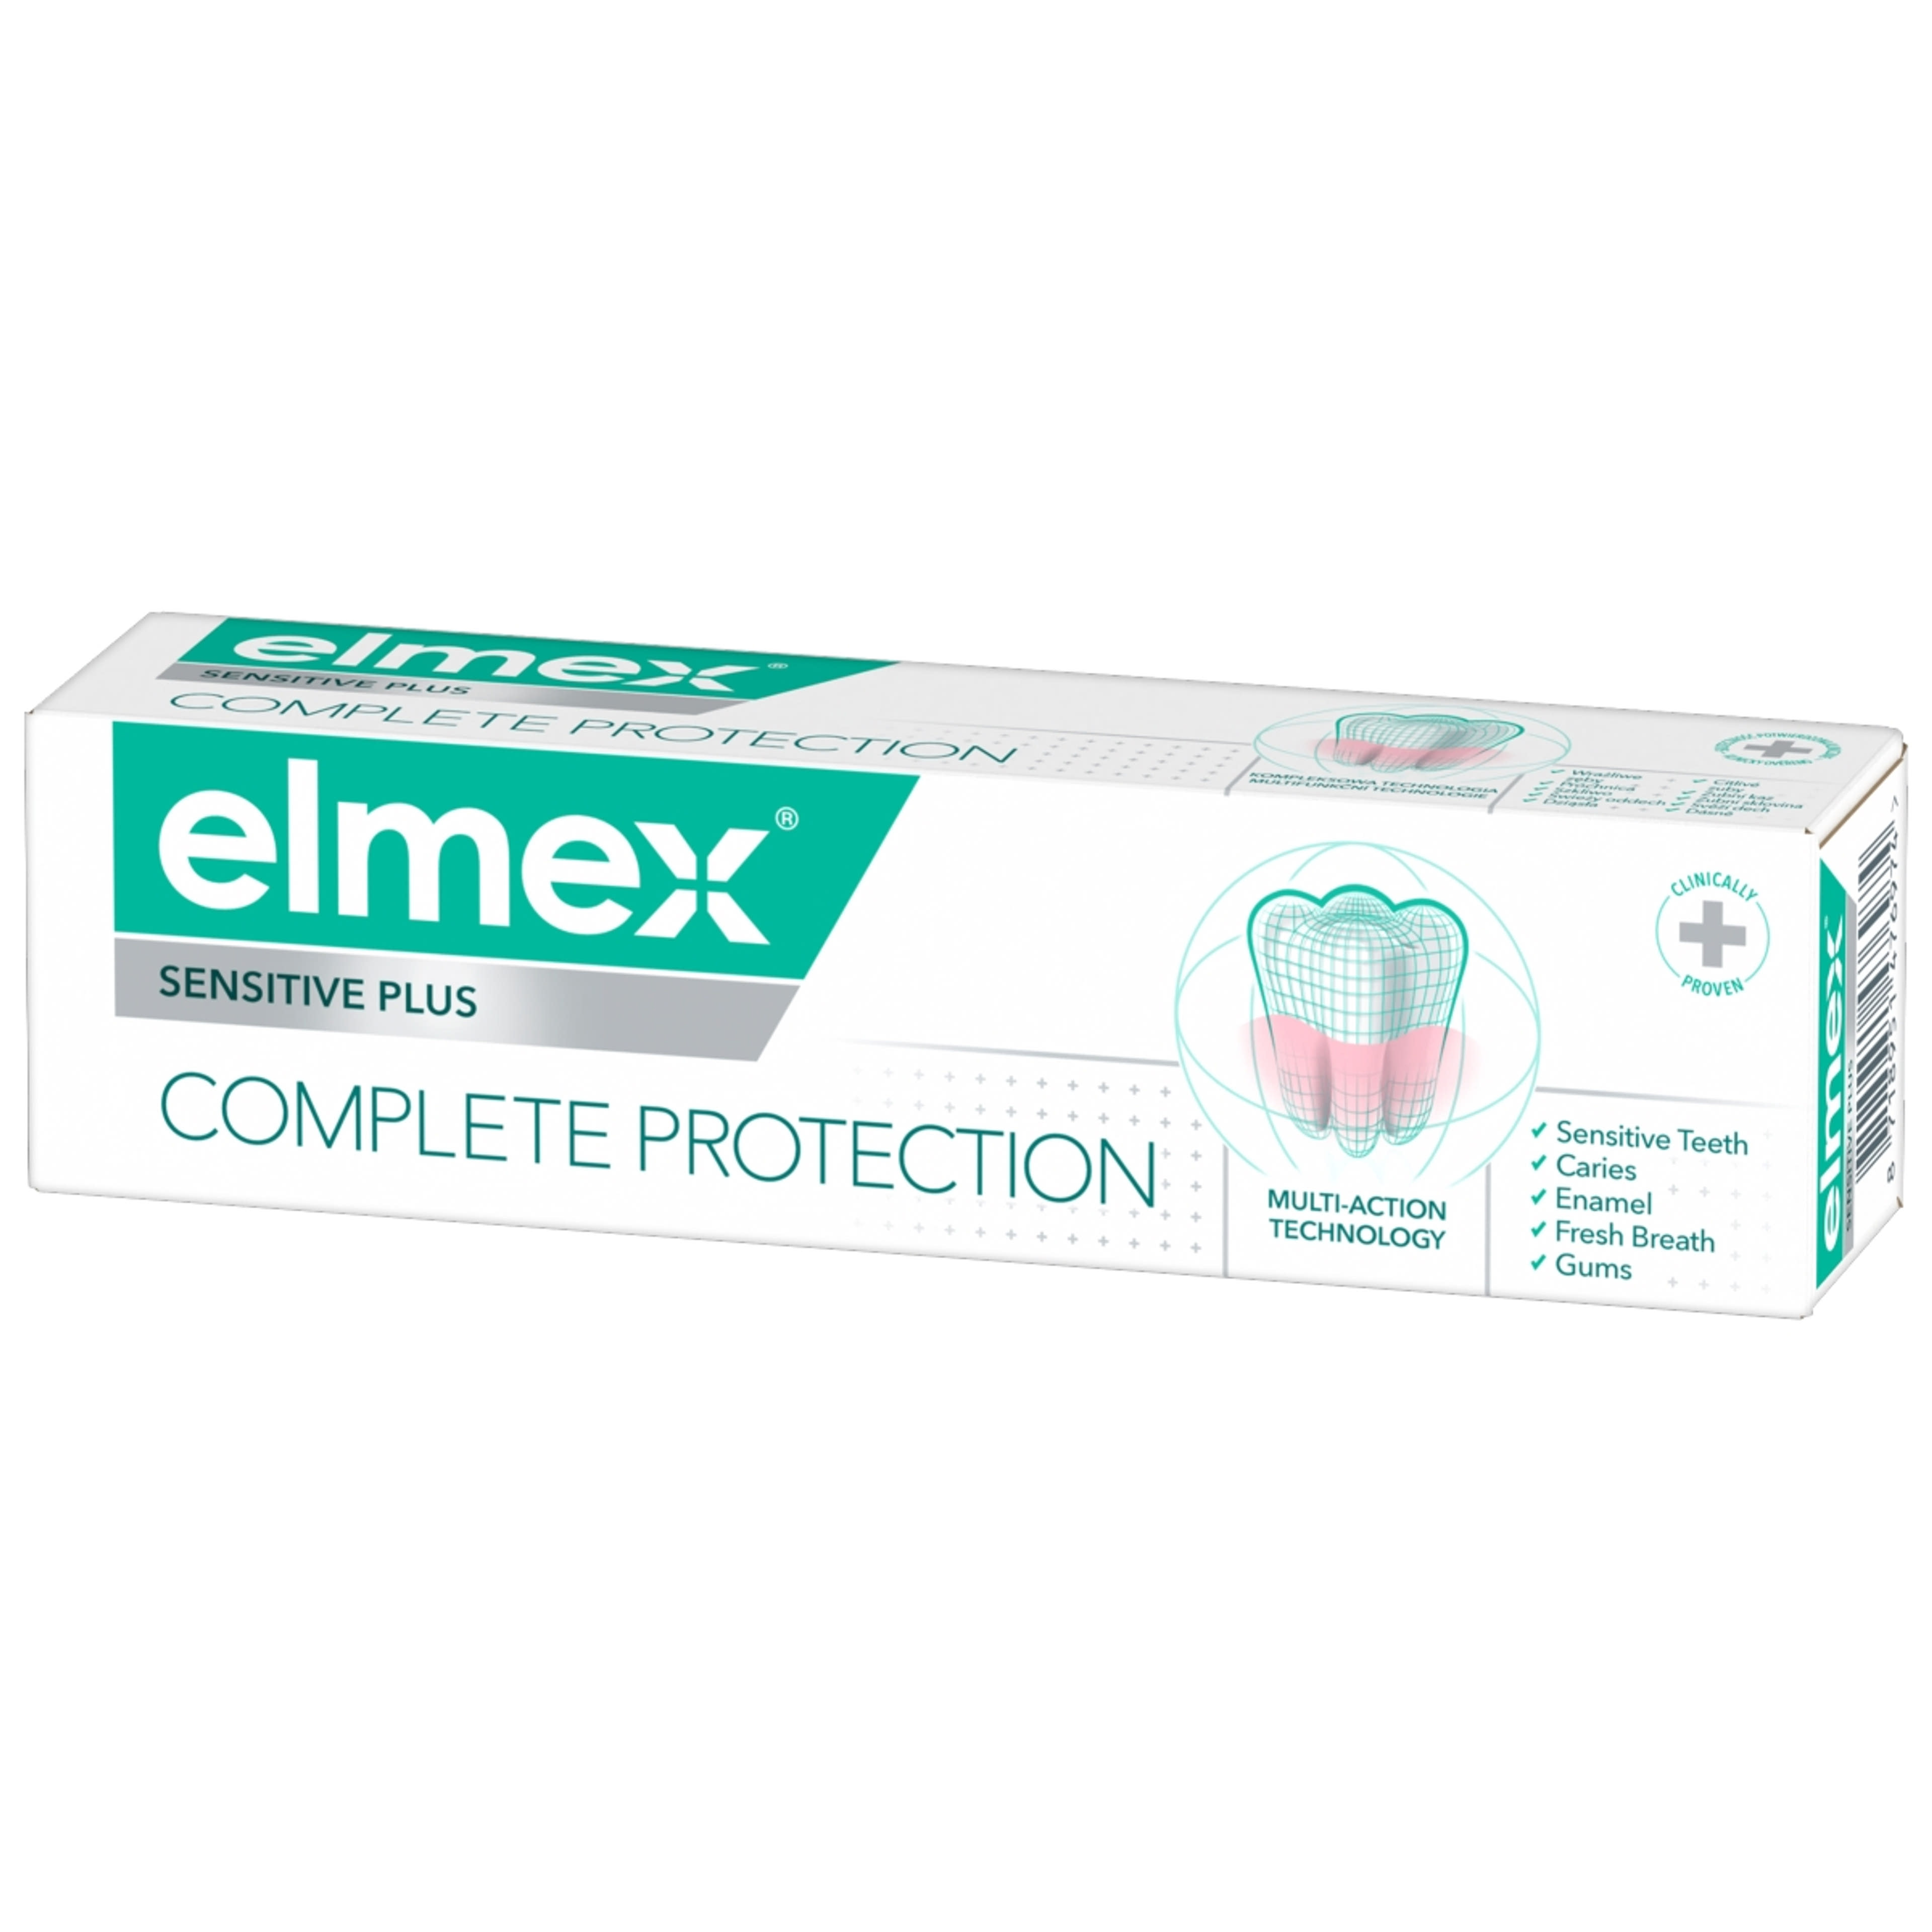 Elmex Sensitive Plus Complete Protection fogkrém - 75 ml-5